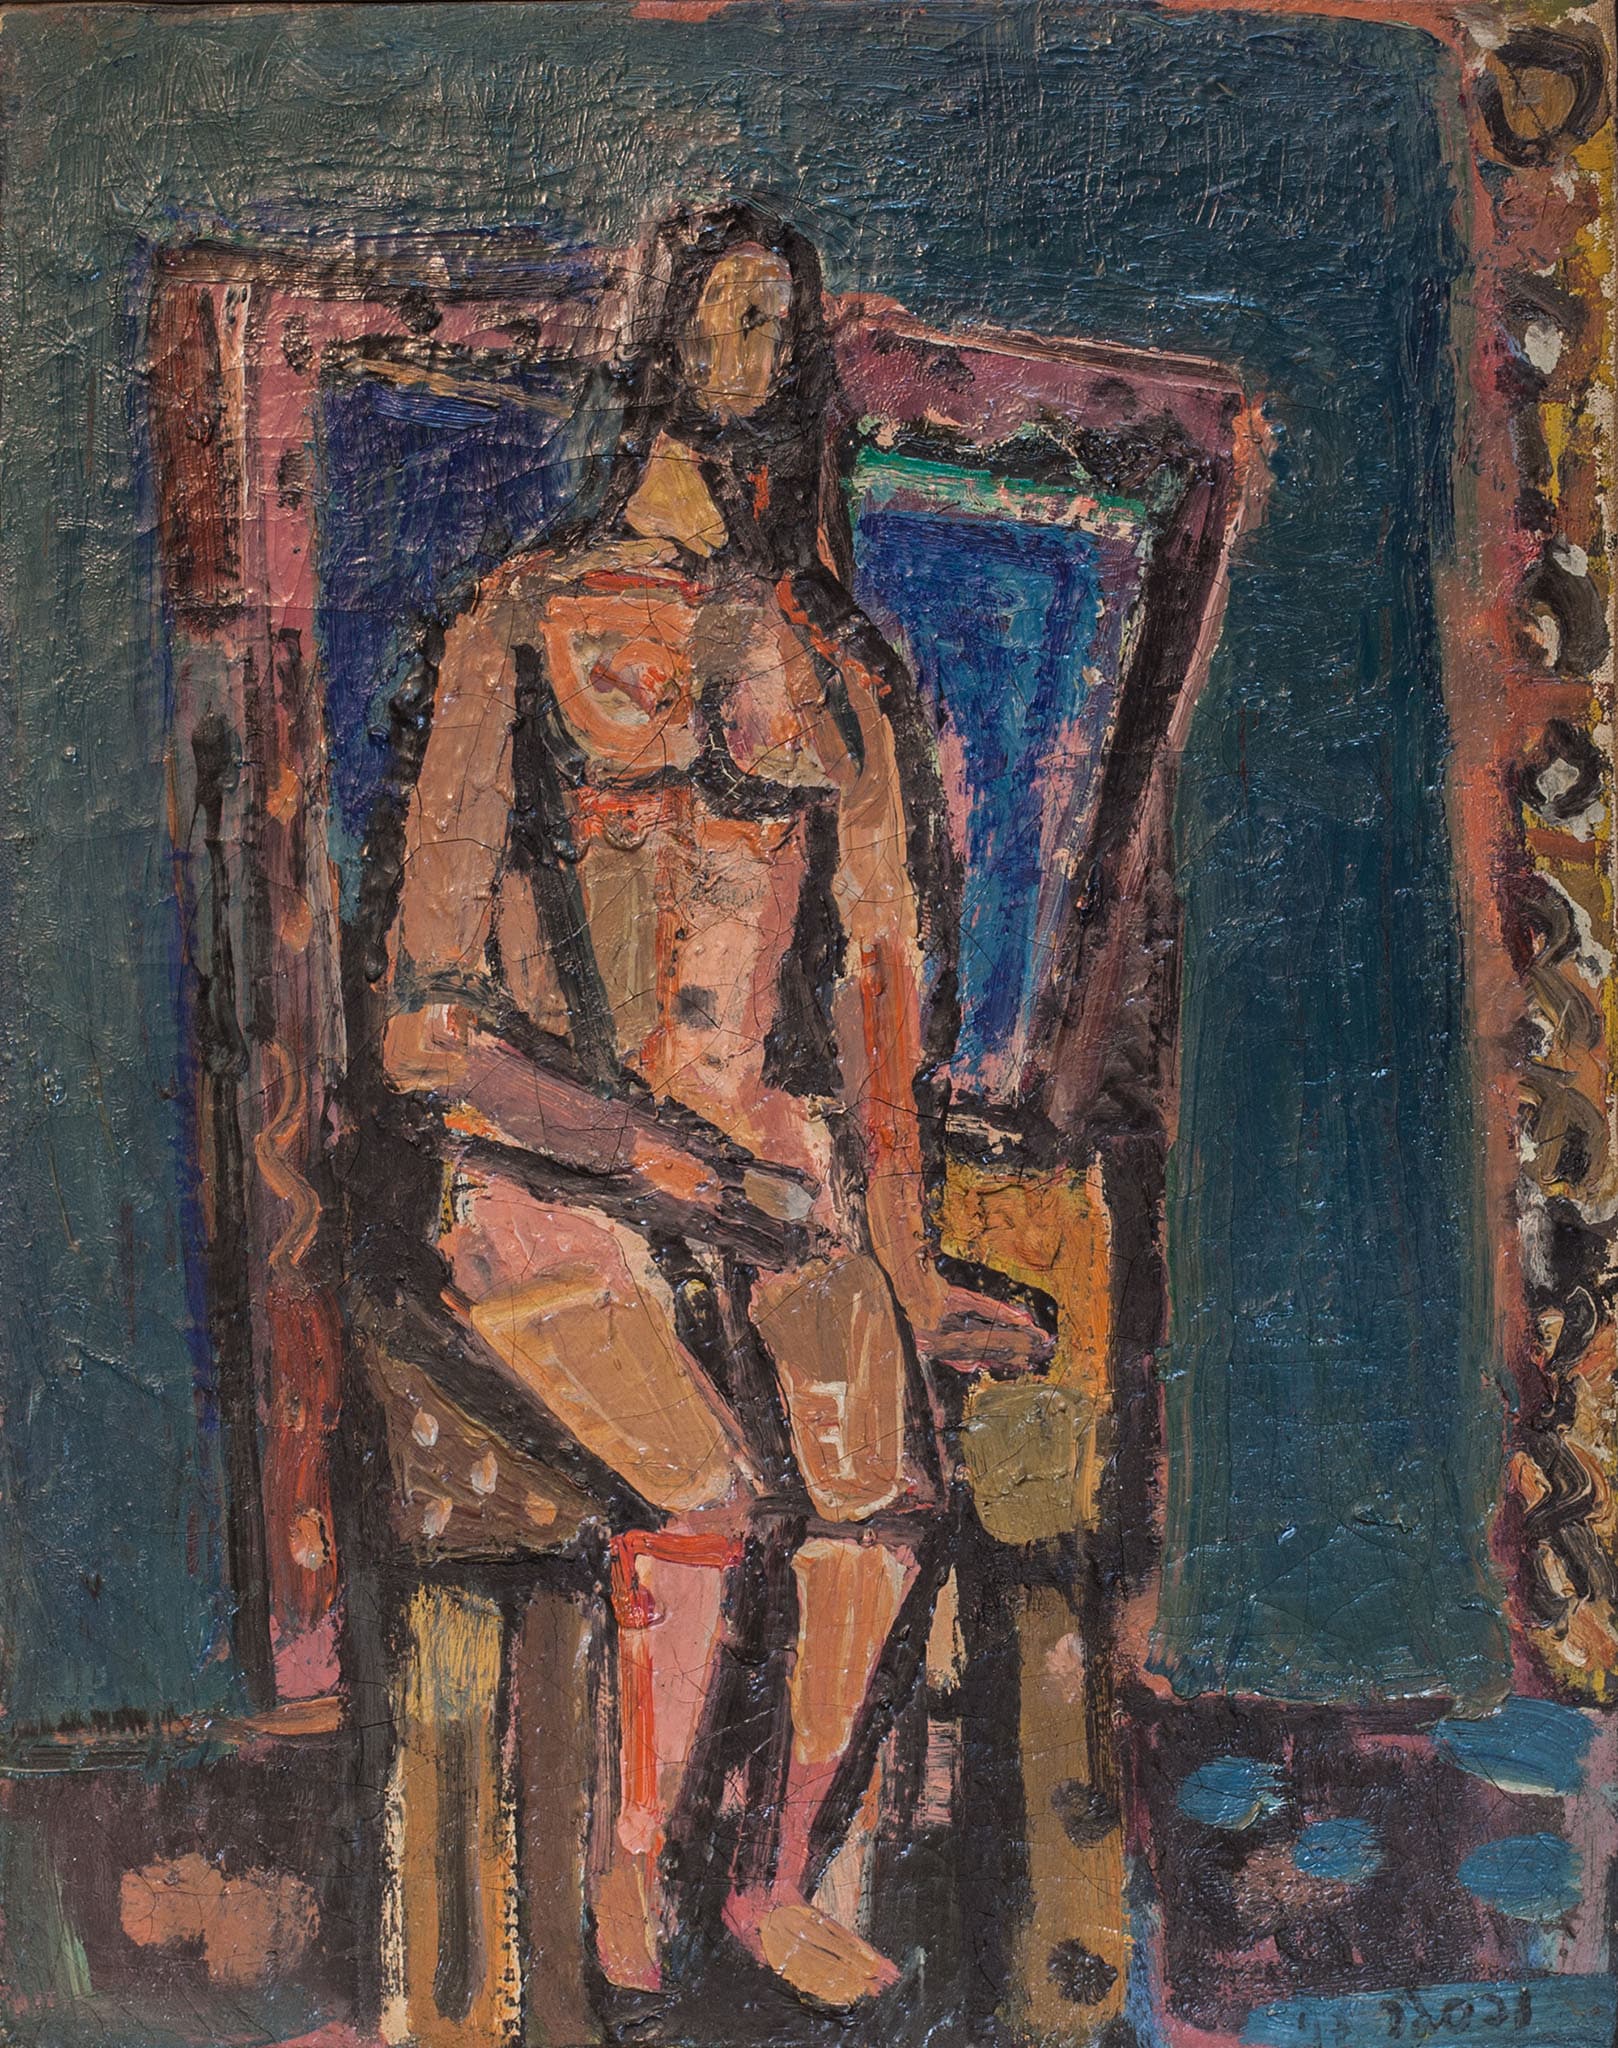 יעקב וכסלר, "אישה בסטודיו", 1943, שמן על בד, 50x40 ס"מ